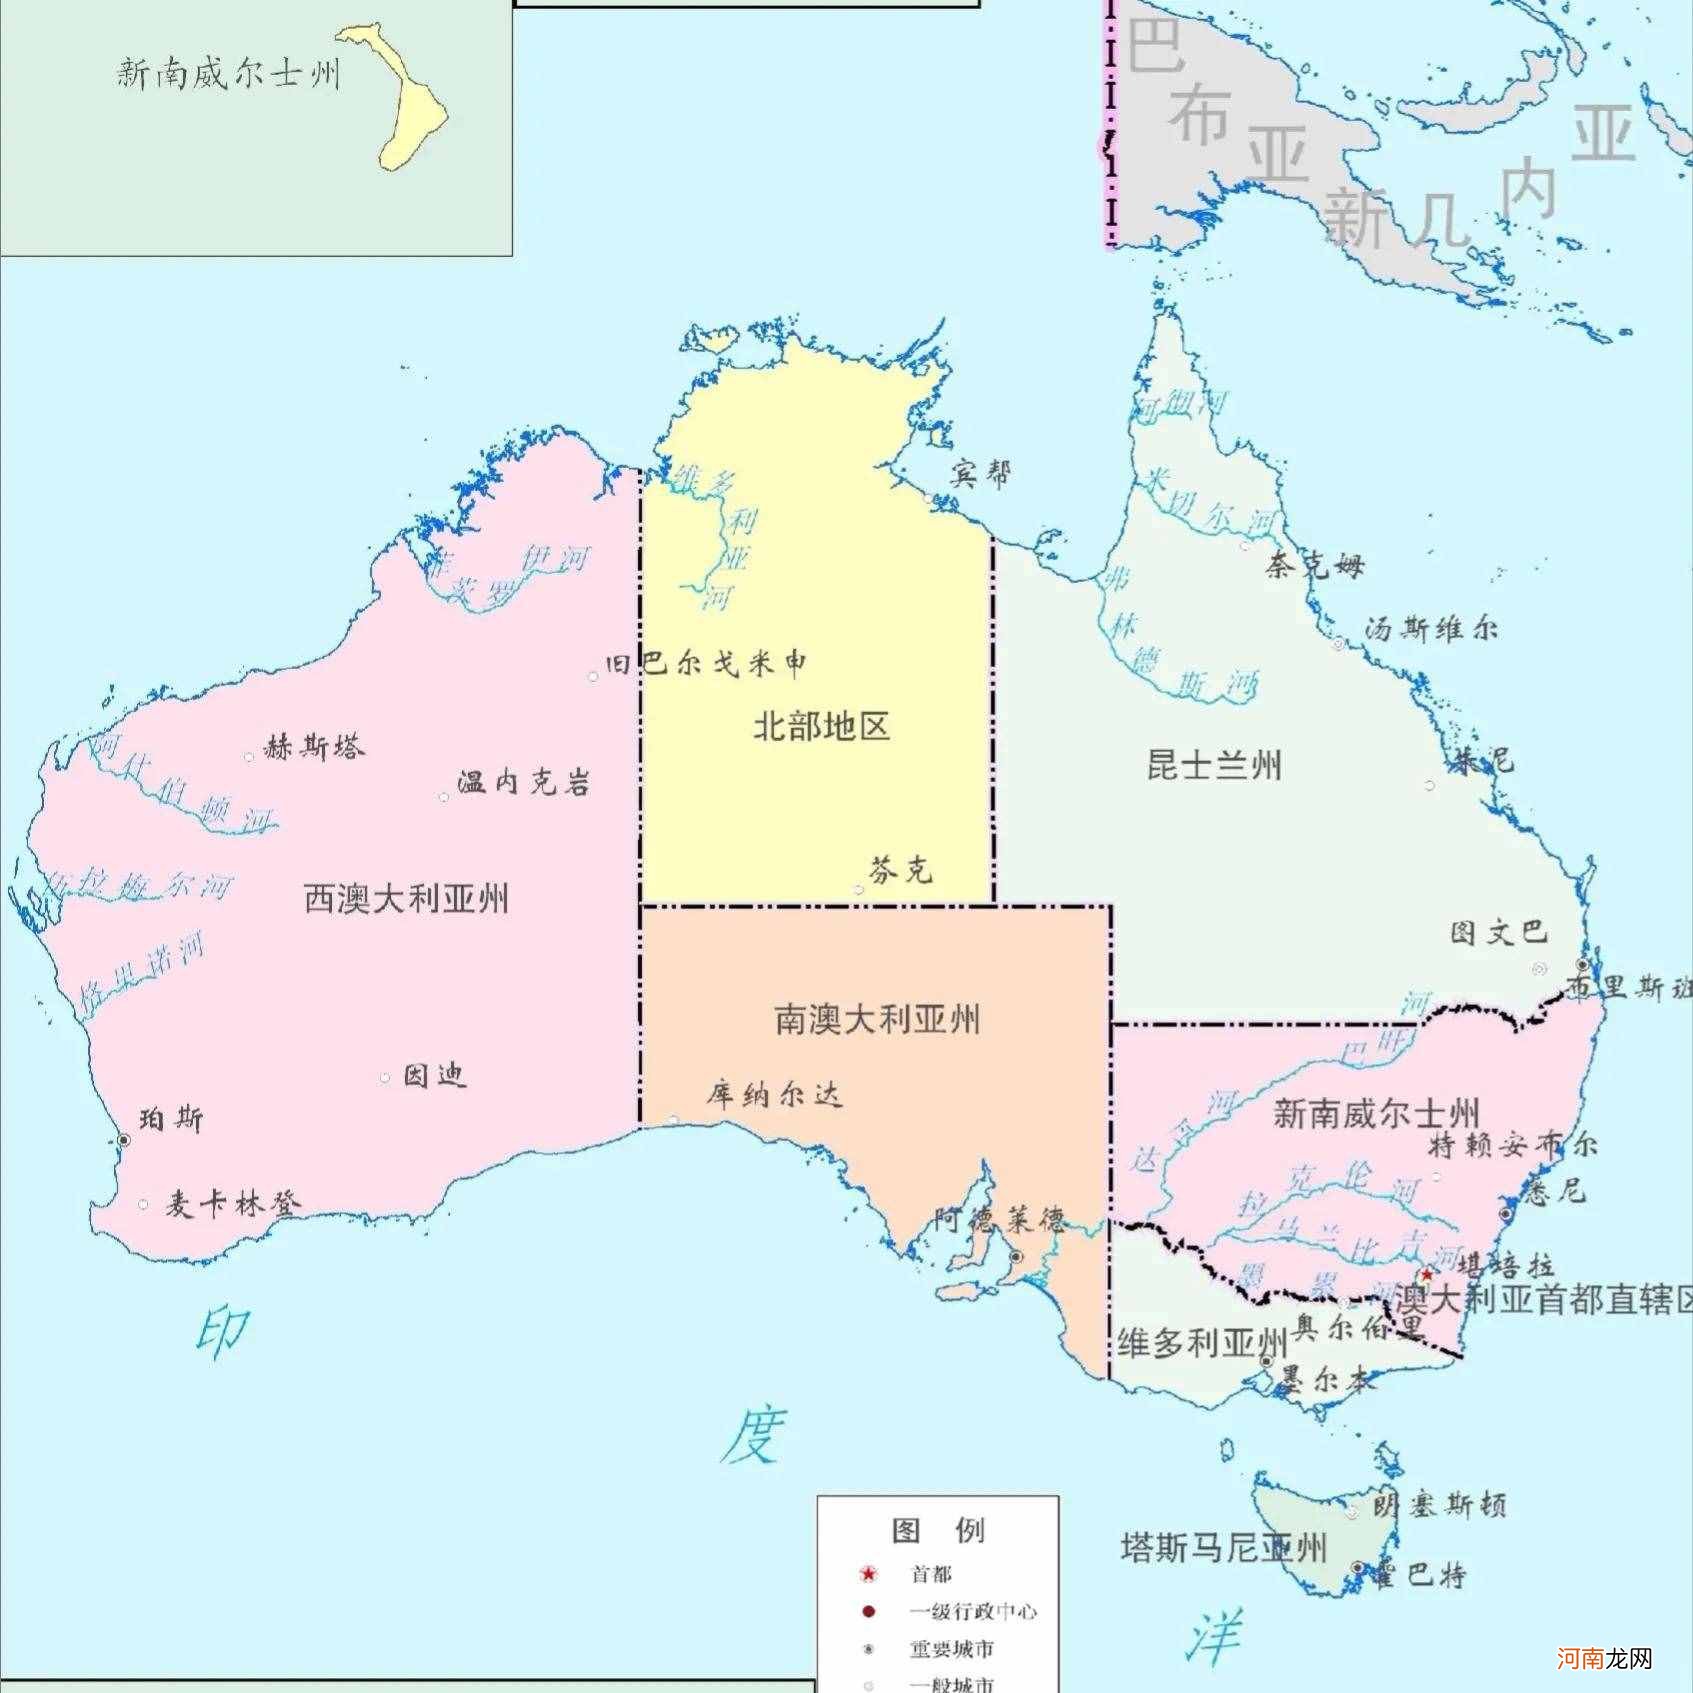 印度尼西亚属于什么洲 澳大利亚属于什么洲